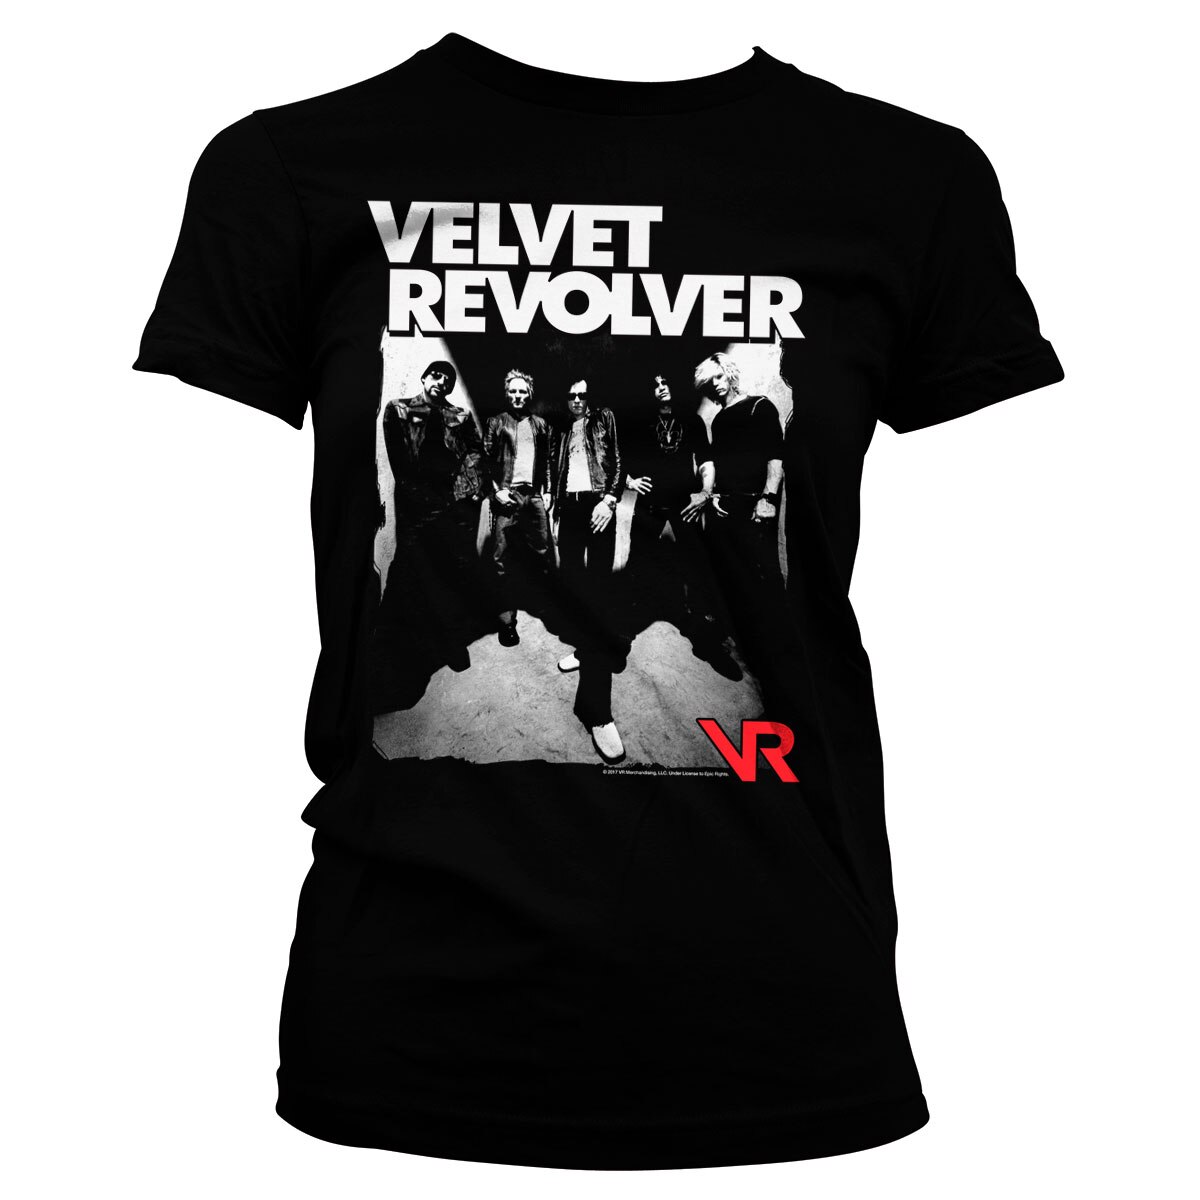 Velvet Revolver Girly Tee